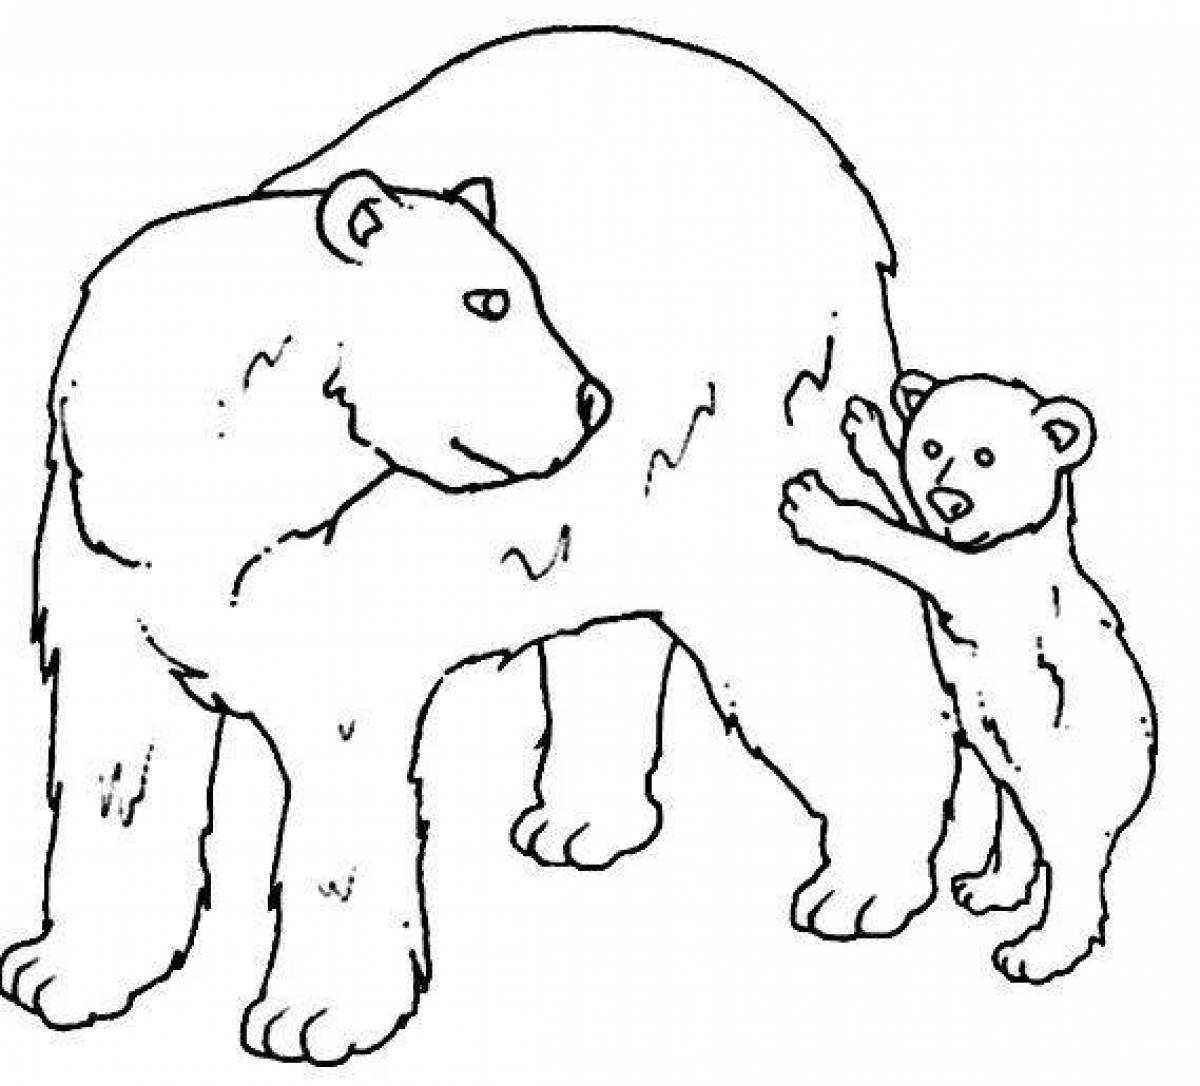 Curious bear coloring book